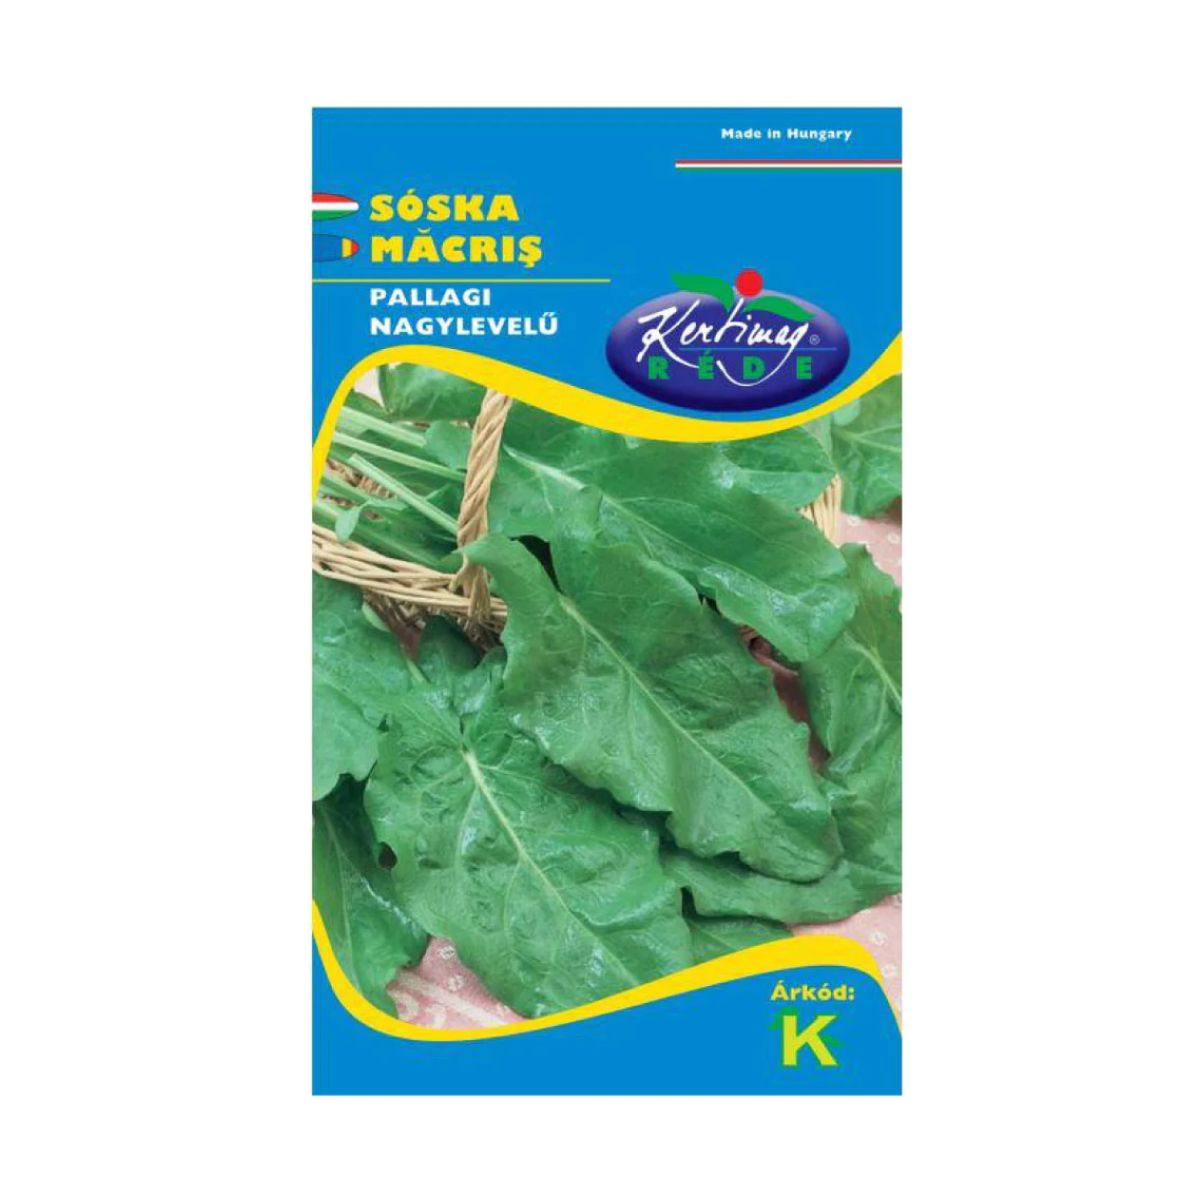 Seminte de legume HOBBY - Seminte de macris PALLAGI, 2 gr, KERTIMAG, hectarul.ro